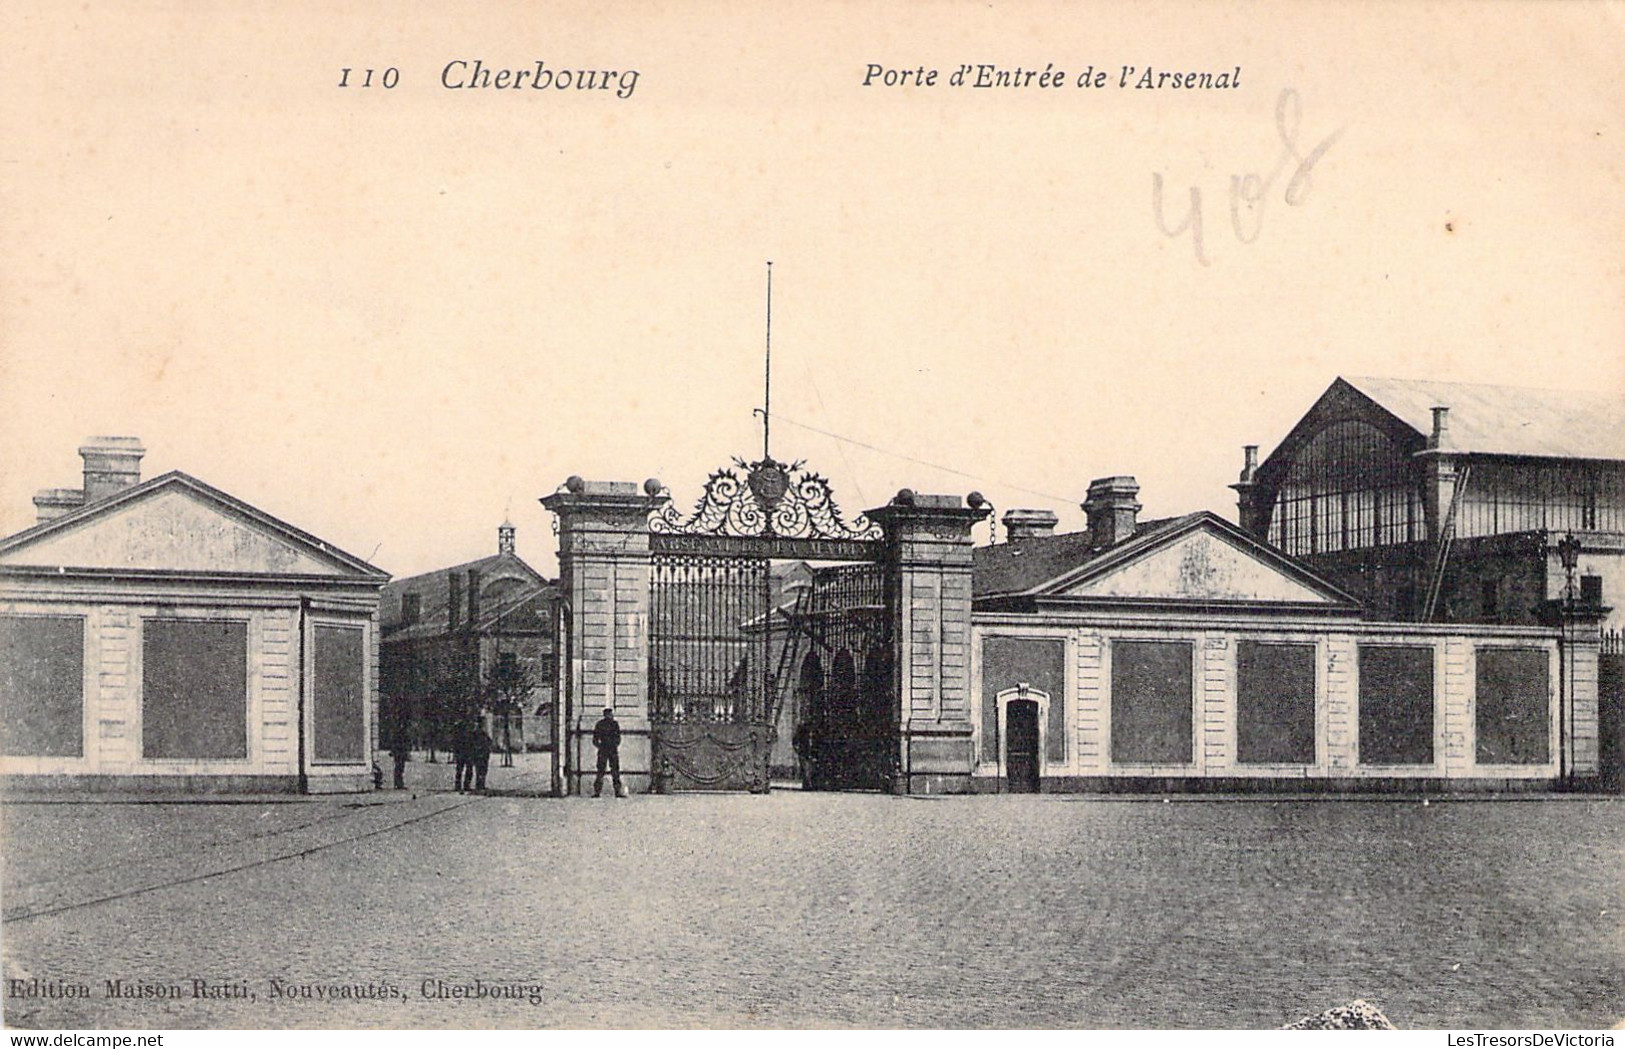 MILITARIA - CHERBOURG - Porte D'entrée De L'Arsenal - Edition Maison Ratti - Carte Postale Ancienne - Kasernen